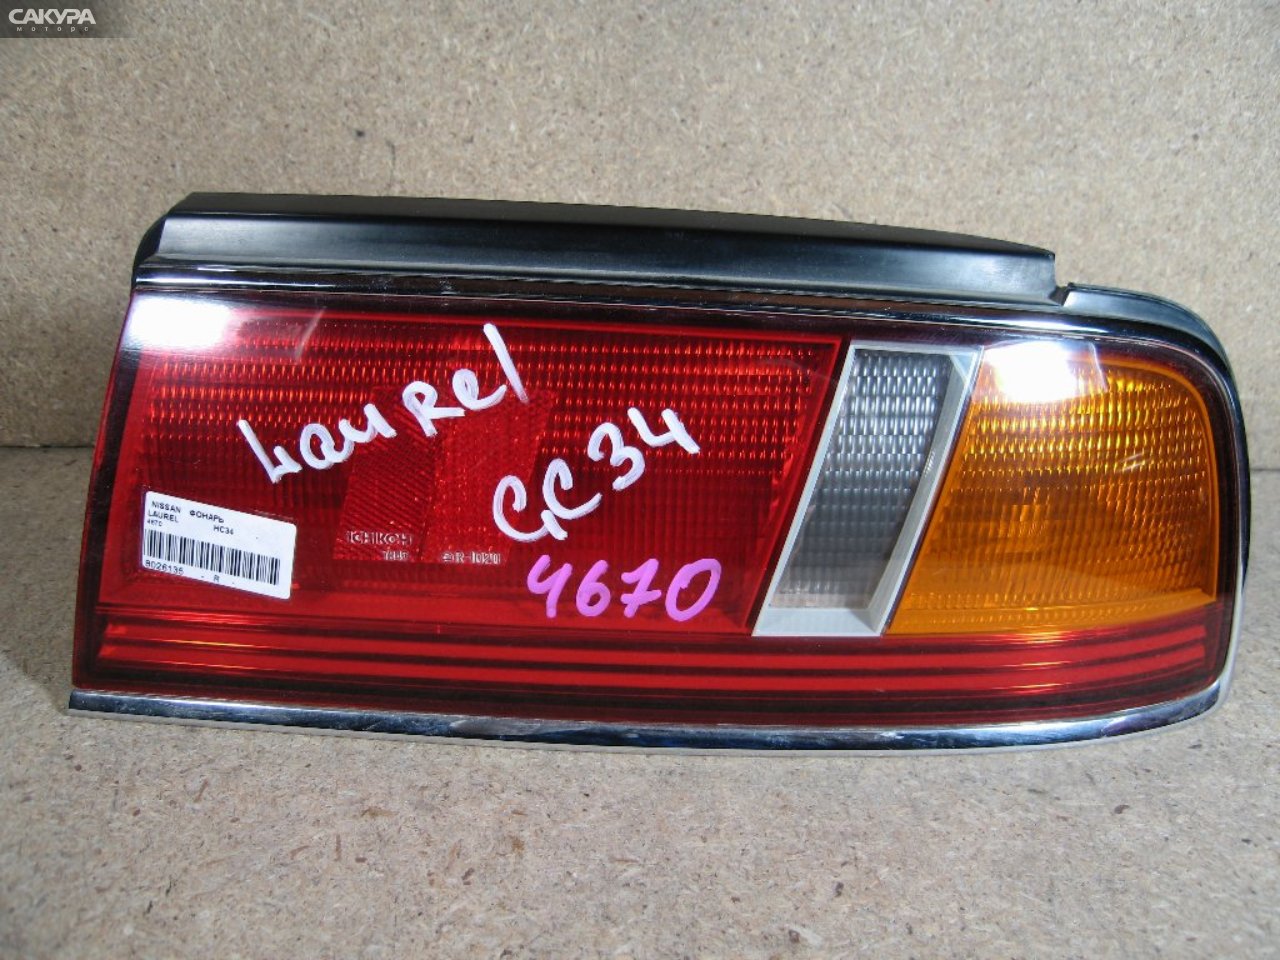 Фонарь стоп-сигнала правый Nissan Laurel HC34 4670: купить в Сакура Абакан.